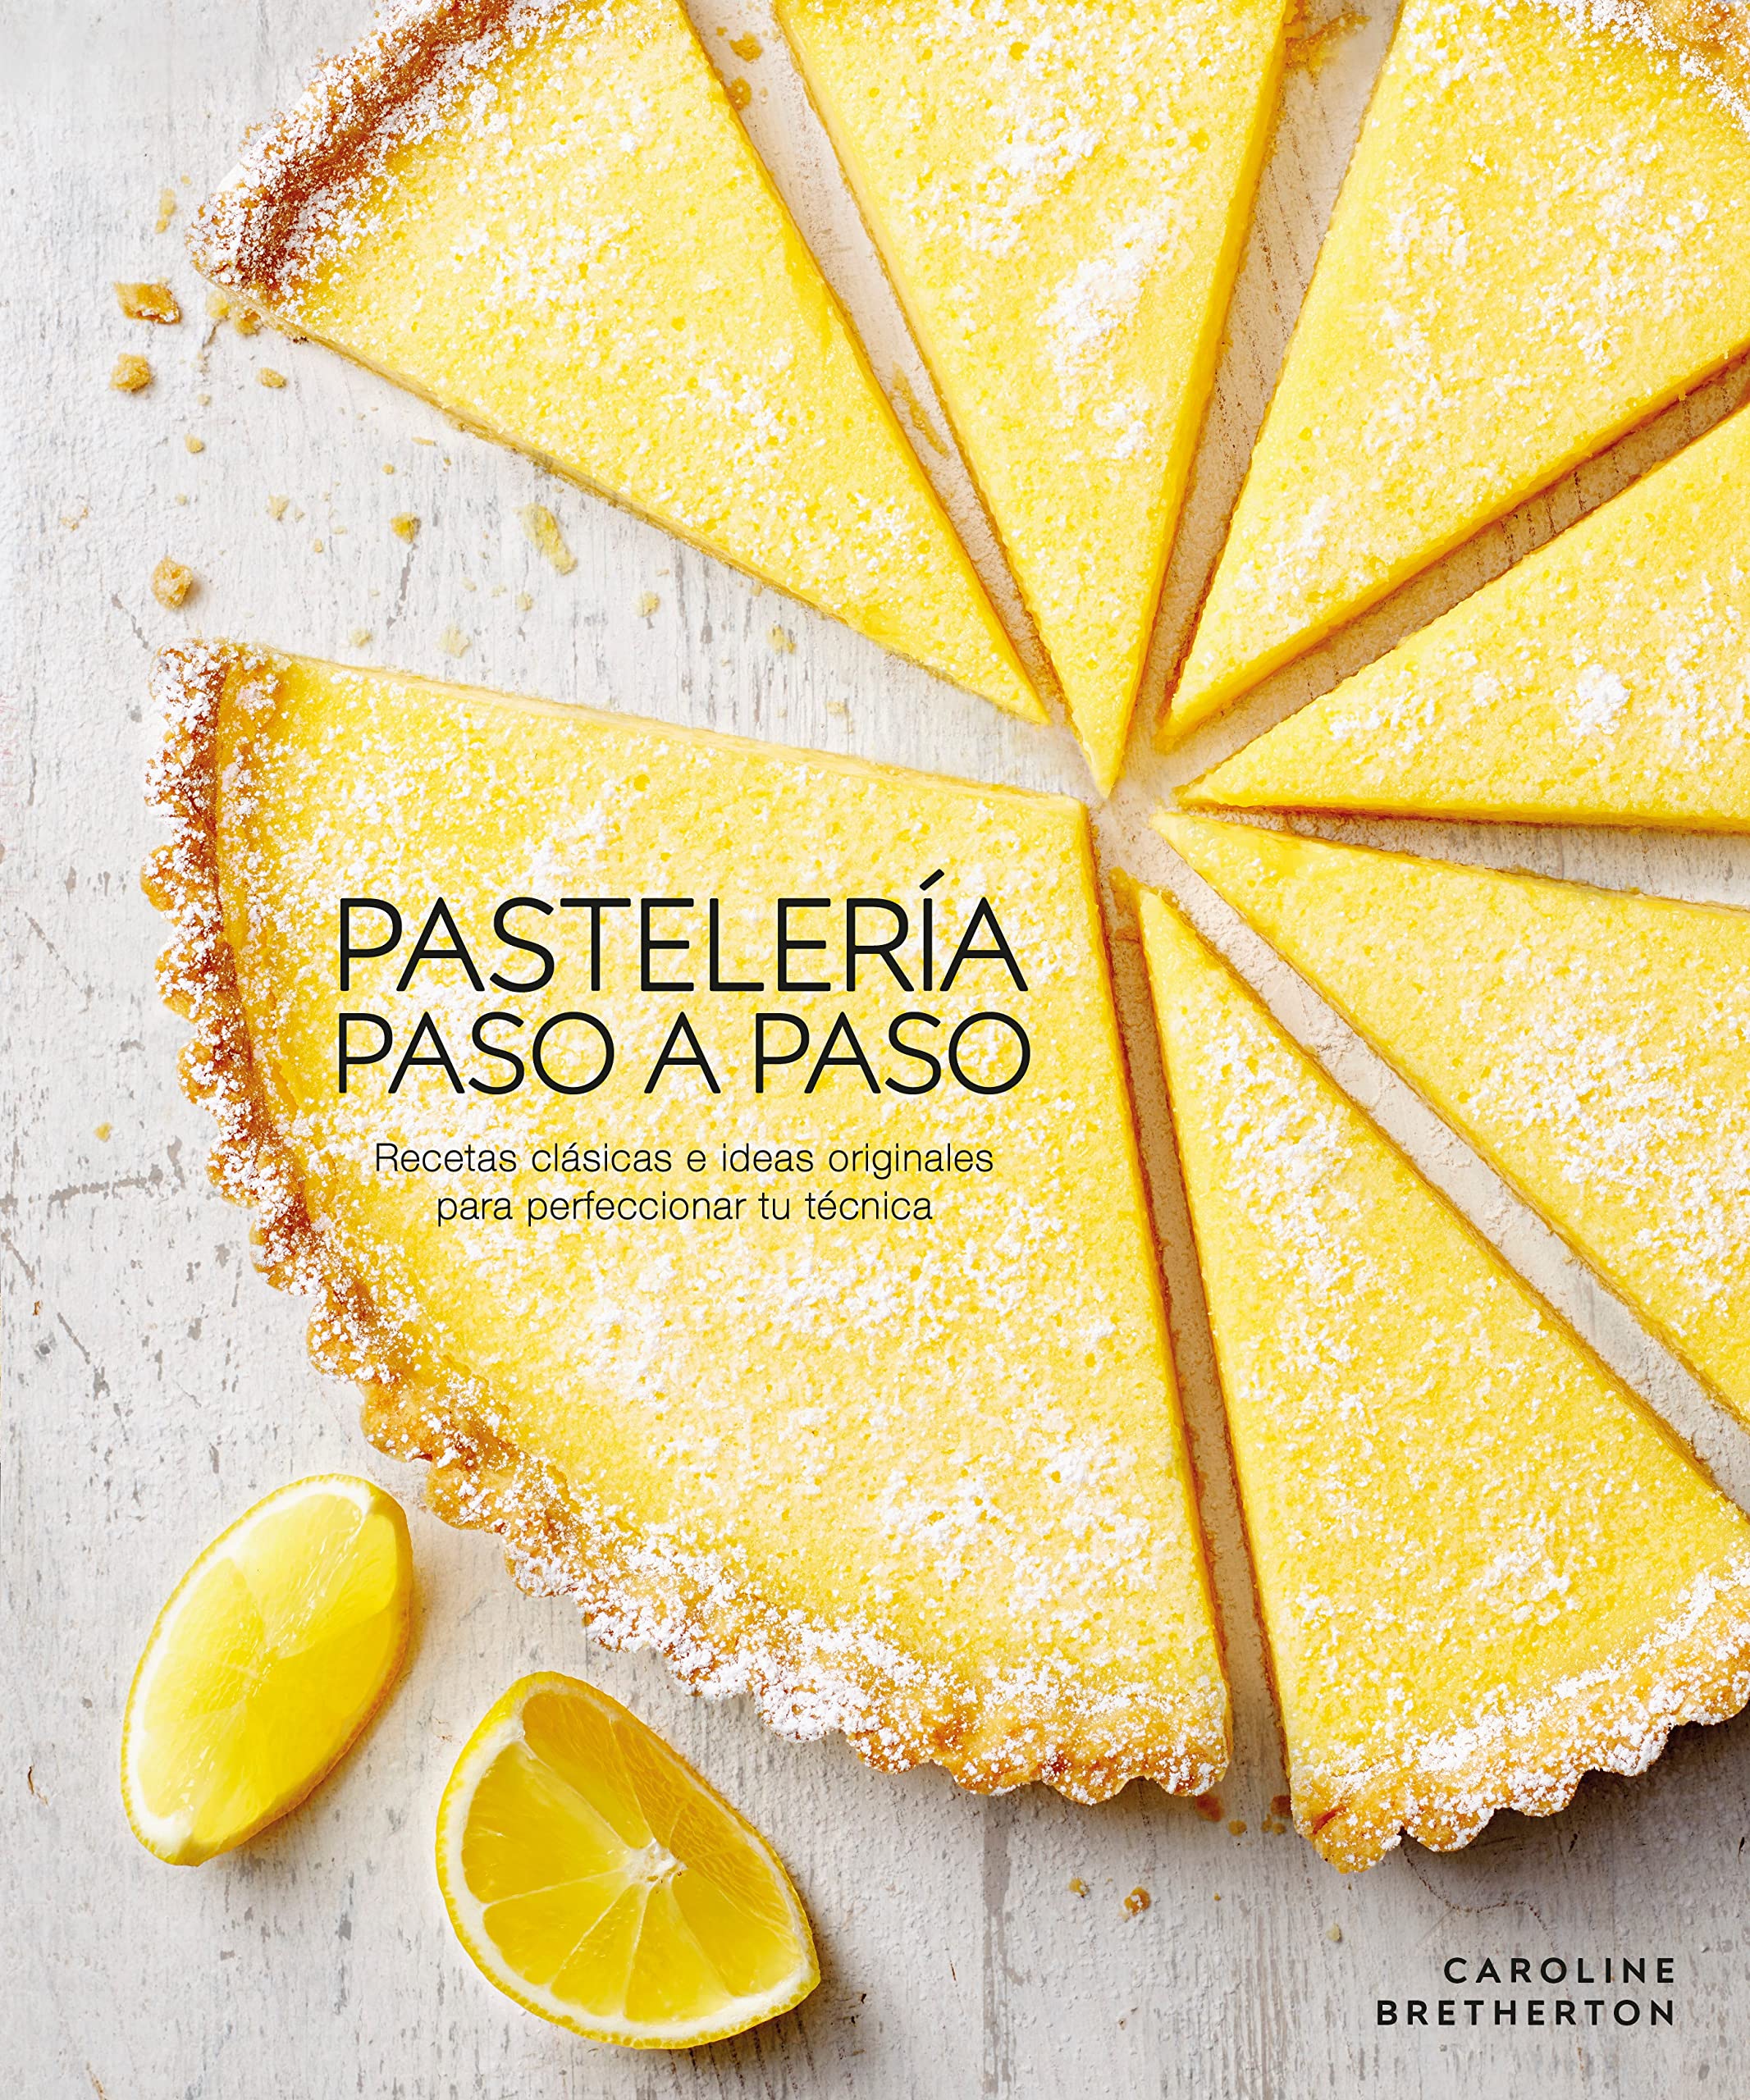 Pastelería paso a paso (Illustrated Step-by-Step Baking): Recetas clásicas e ideas originales para perfeccionar tu técnica (Spanish Edition)